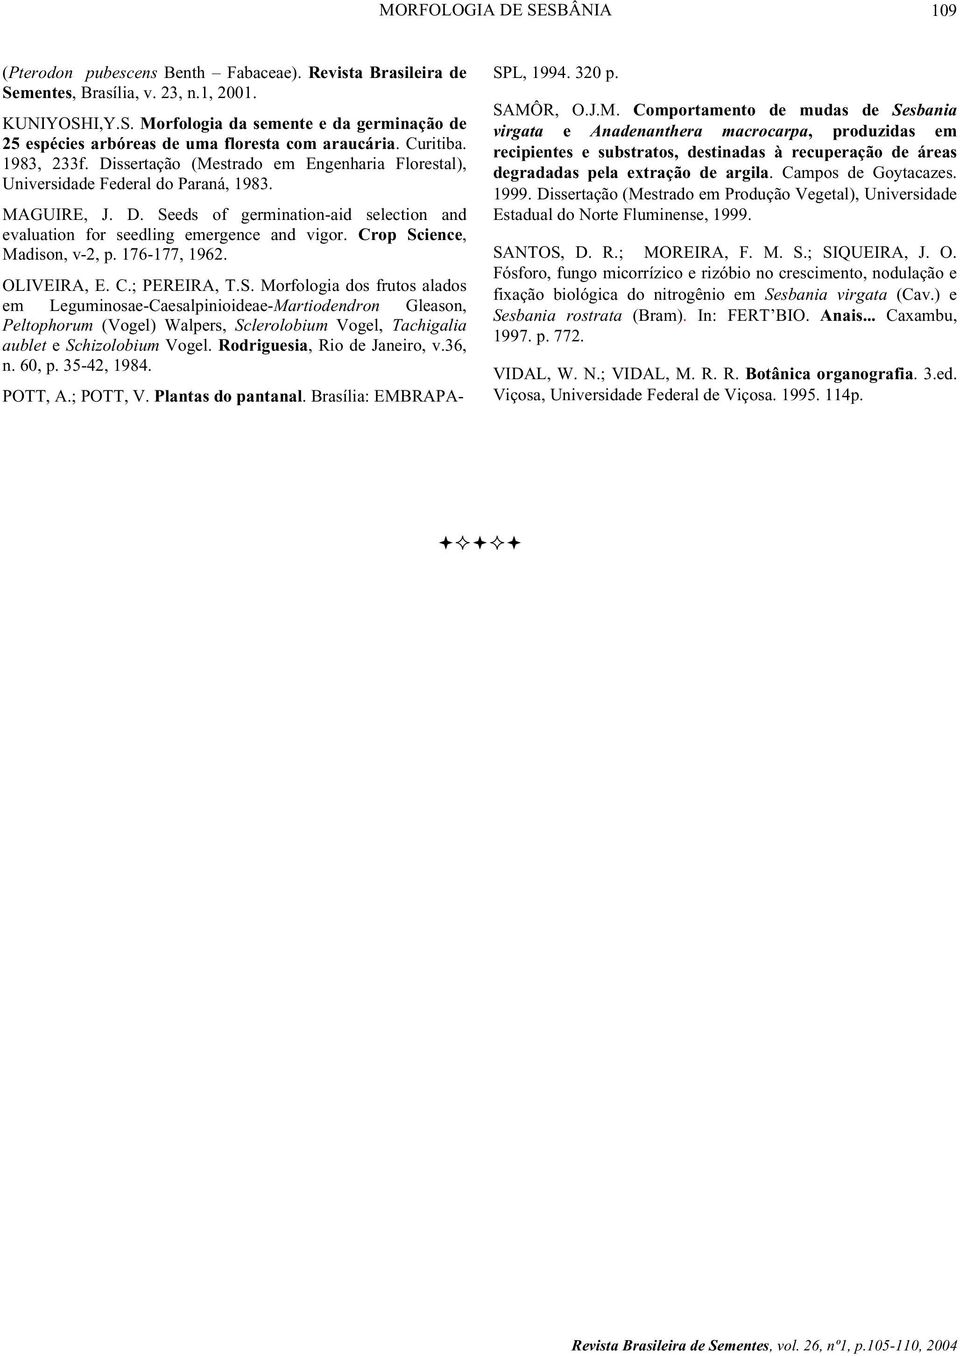 Crop Science, Madison, v-2, p. 176-177, 1962. OLIVEIRA, E. C.; PEREIRA, T.S. Morfologia dos frutos alados em Leguminosae-Caesalpinioideae-Martiodendron Gleason, Peltophorum (Vogel) Walpers, Sclerolobium Vogel, Tachigalia aublet e Schizolobium Vogel.